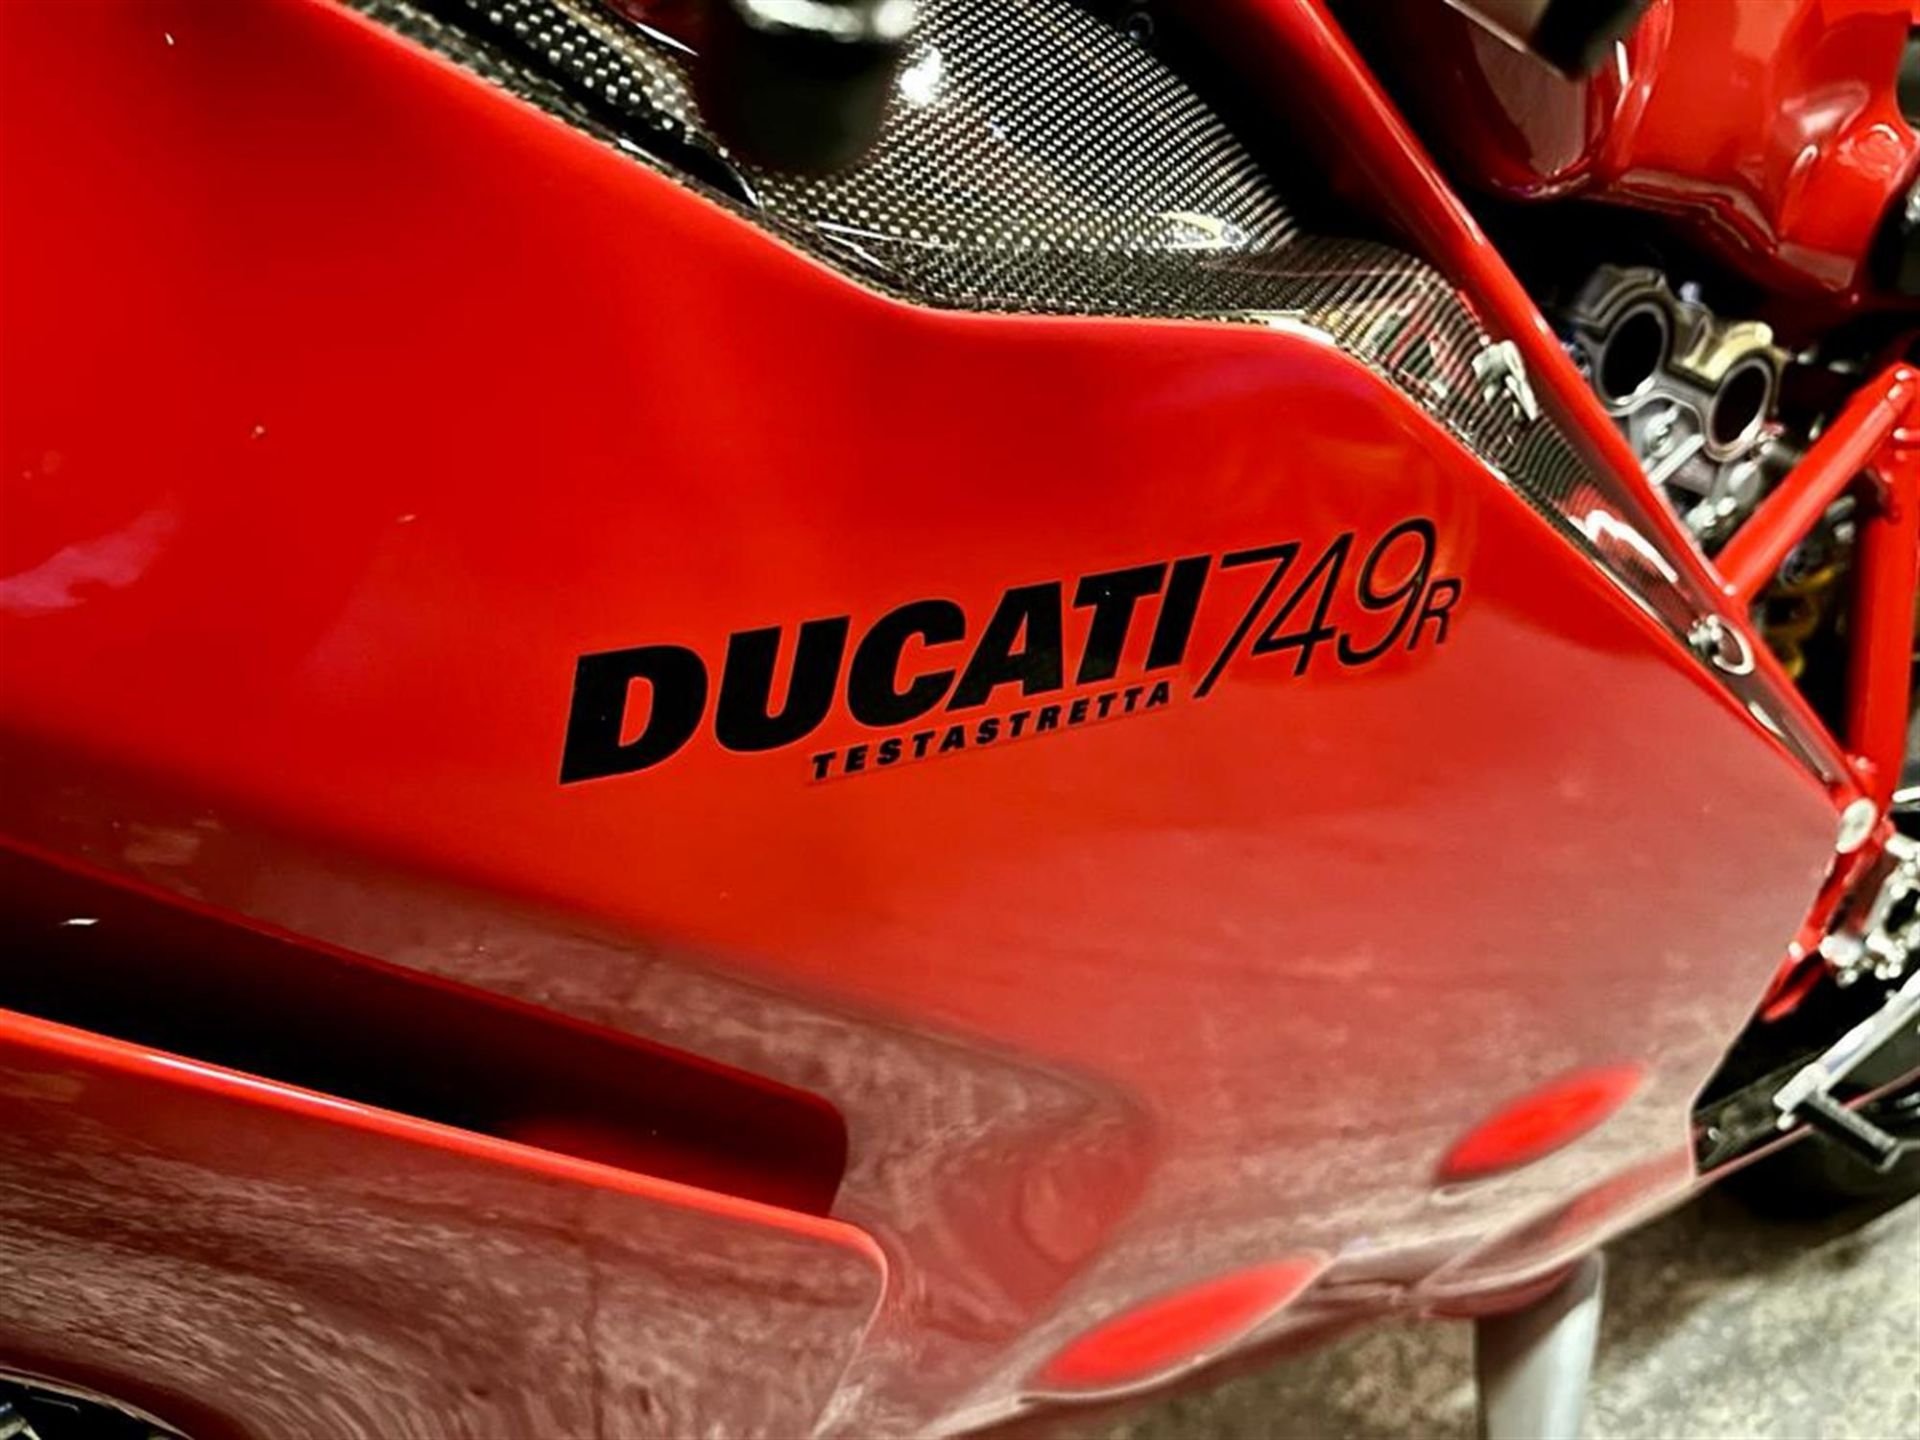 2004 Ducati 749R 749cc - Image 7 of 10